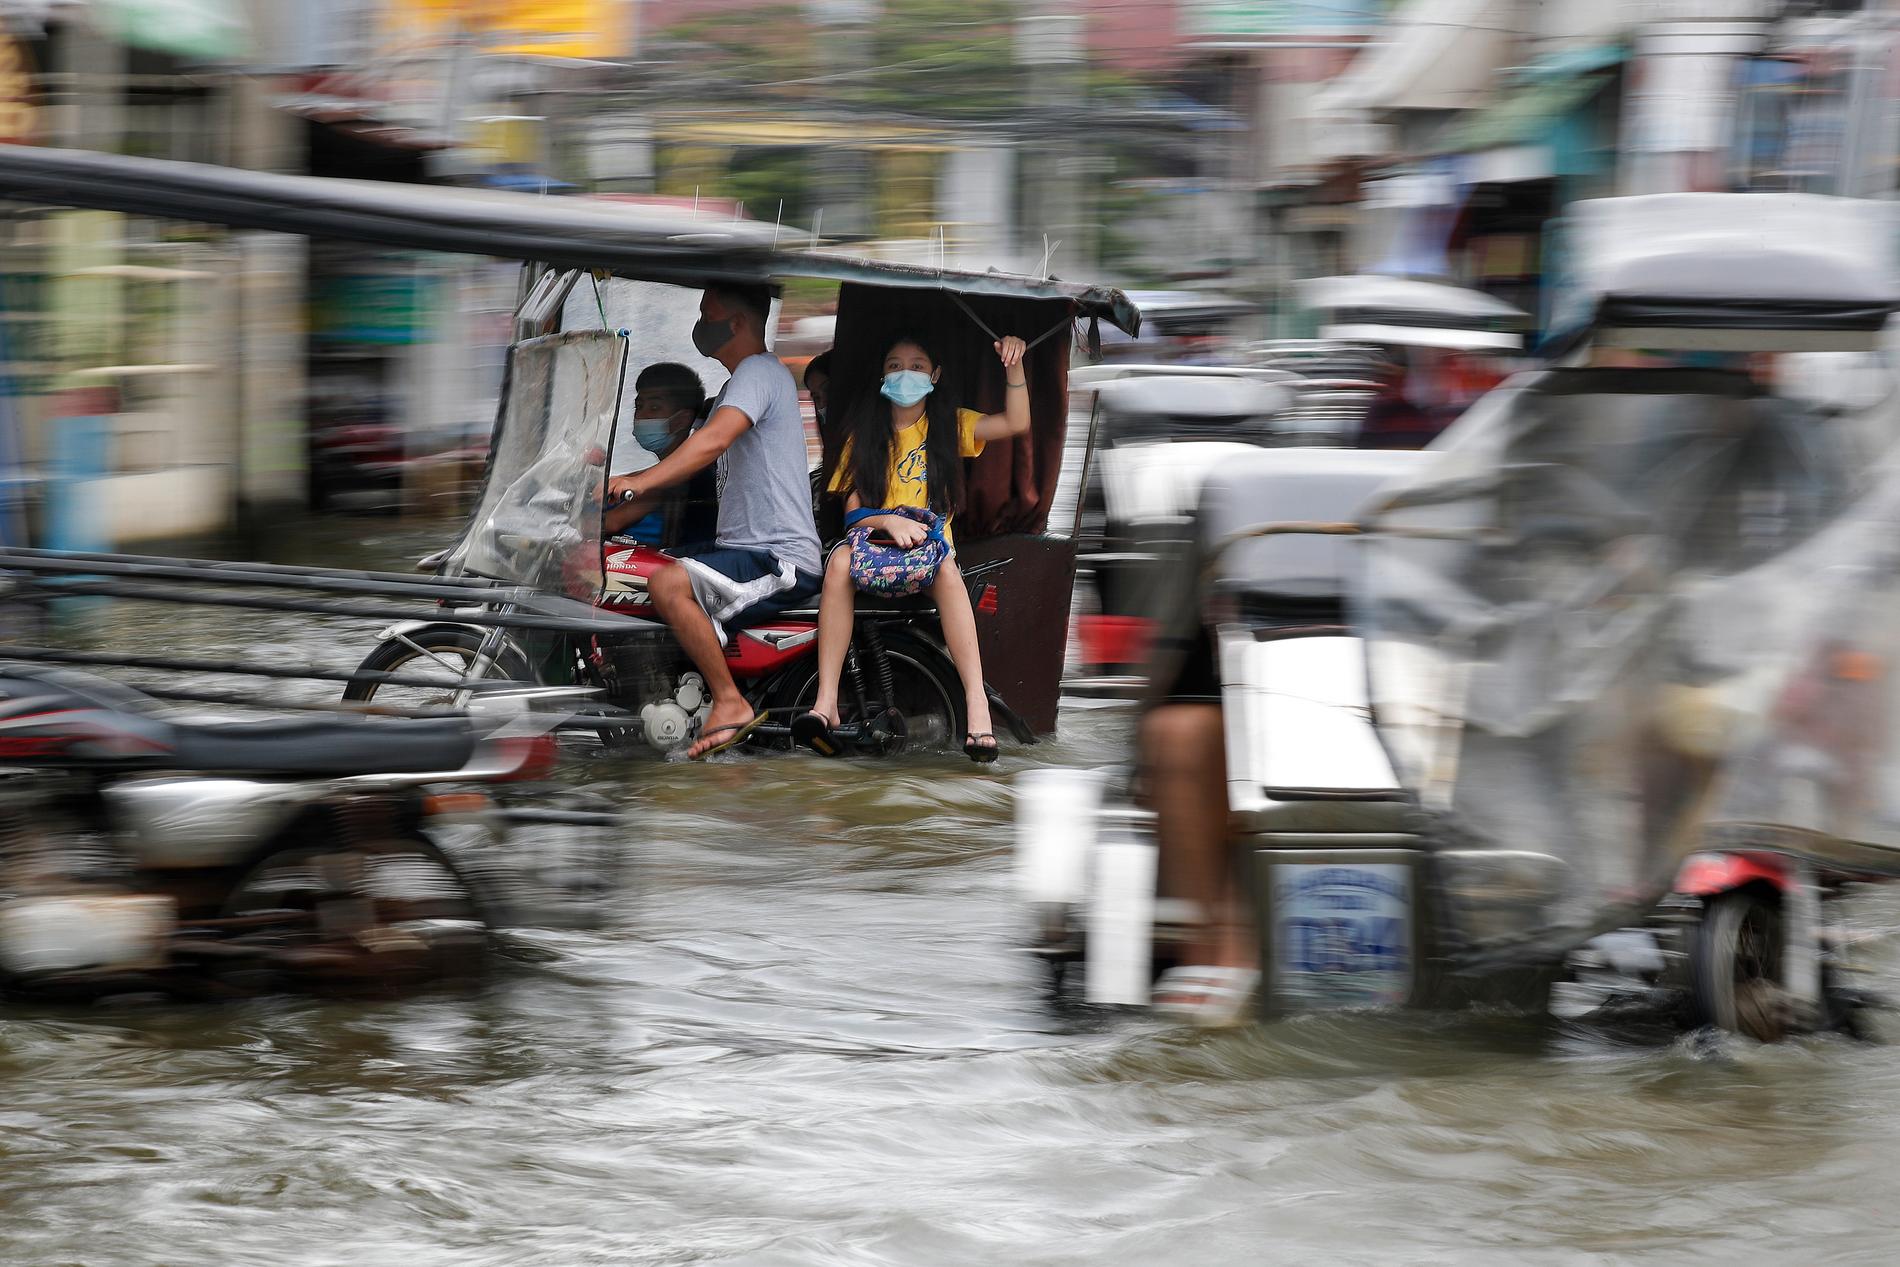 Tyfonen Molave orsakade översvämningar i Filippinerna förra veckan. Bild från Pampanga-provinsen i norra delen av landet i måndags.